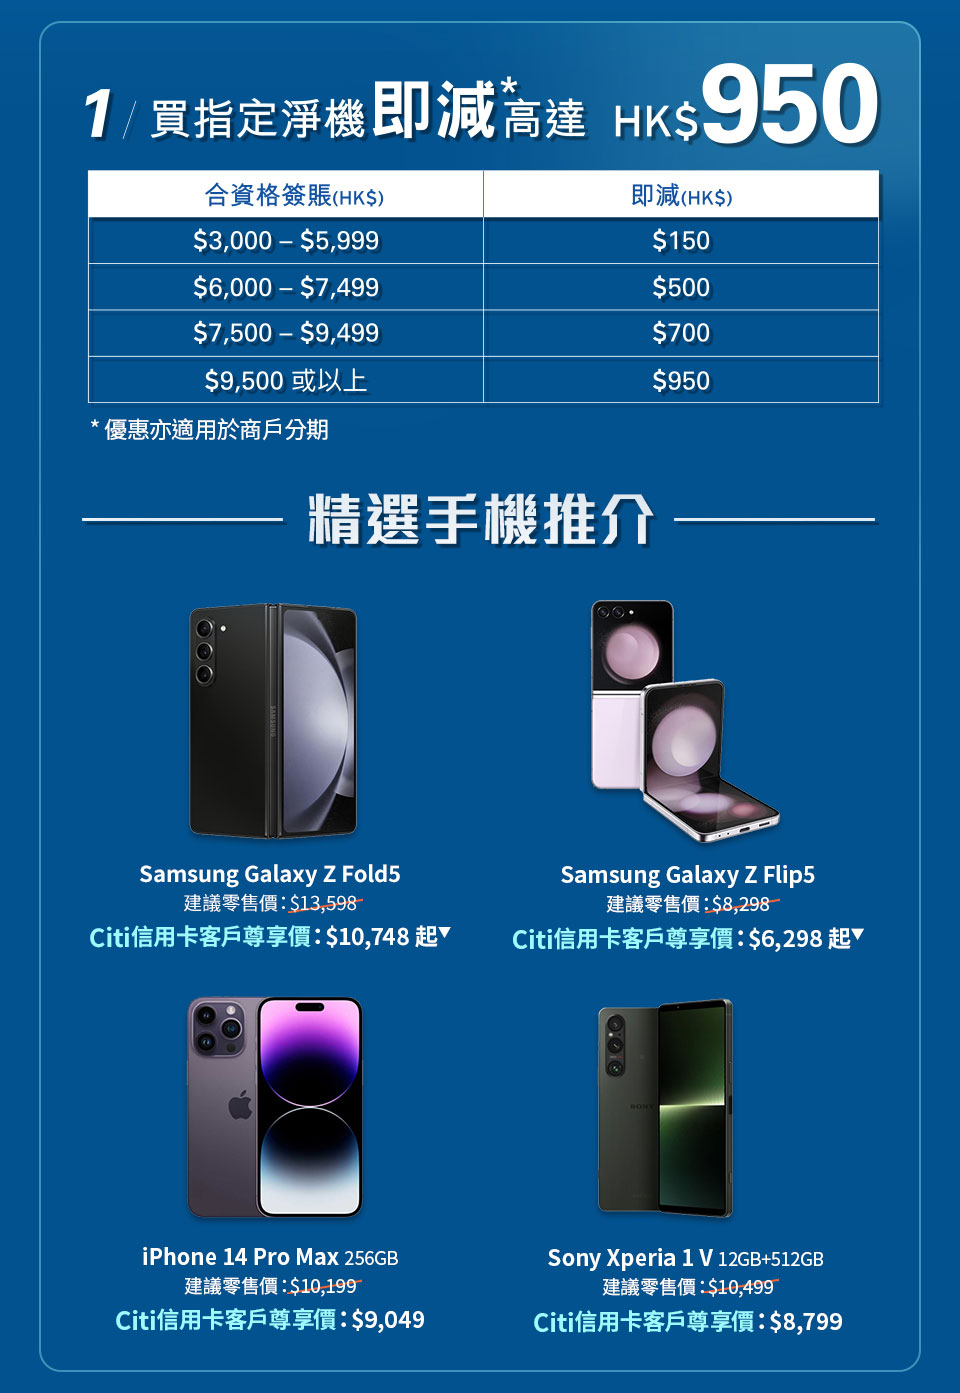 1/ 選購指定淨機即減高達 HK$950* | 精選手機推介